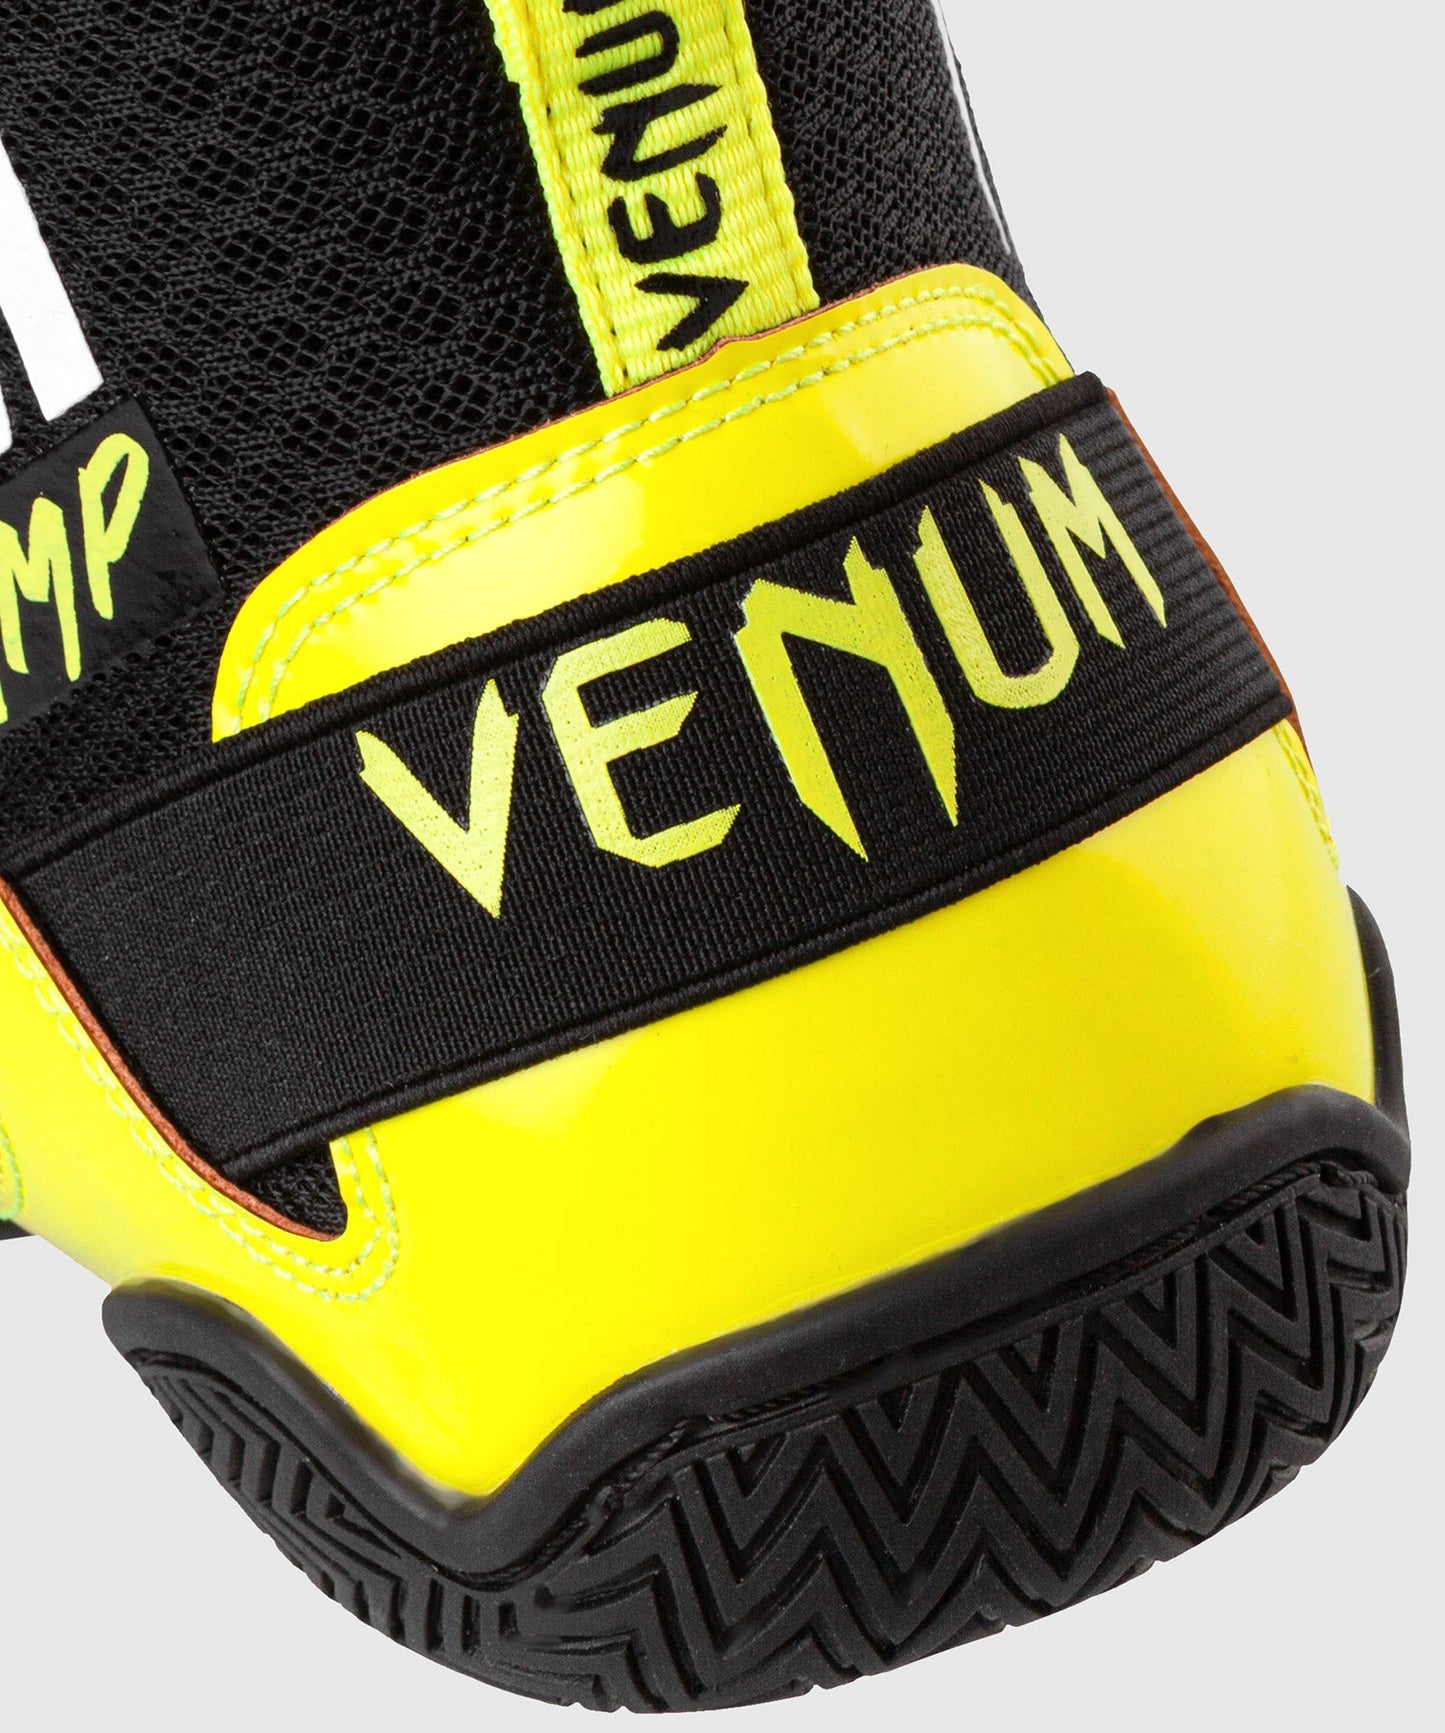 Venum Giant Low VTC 2 Edition Boxing Shoes